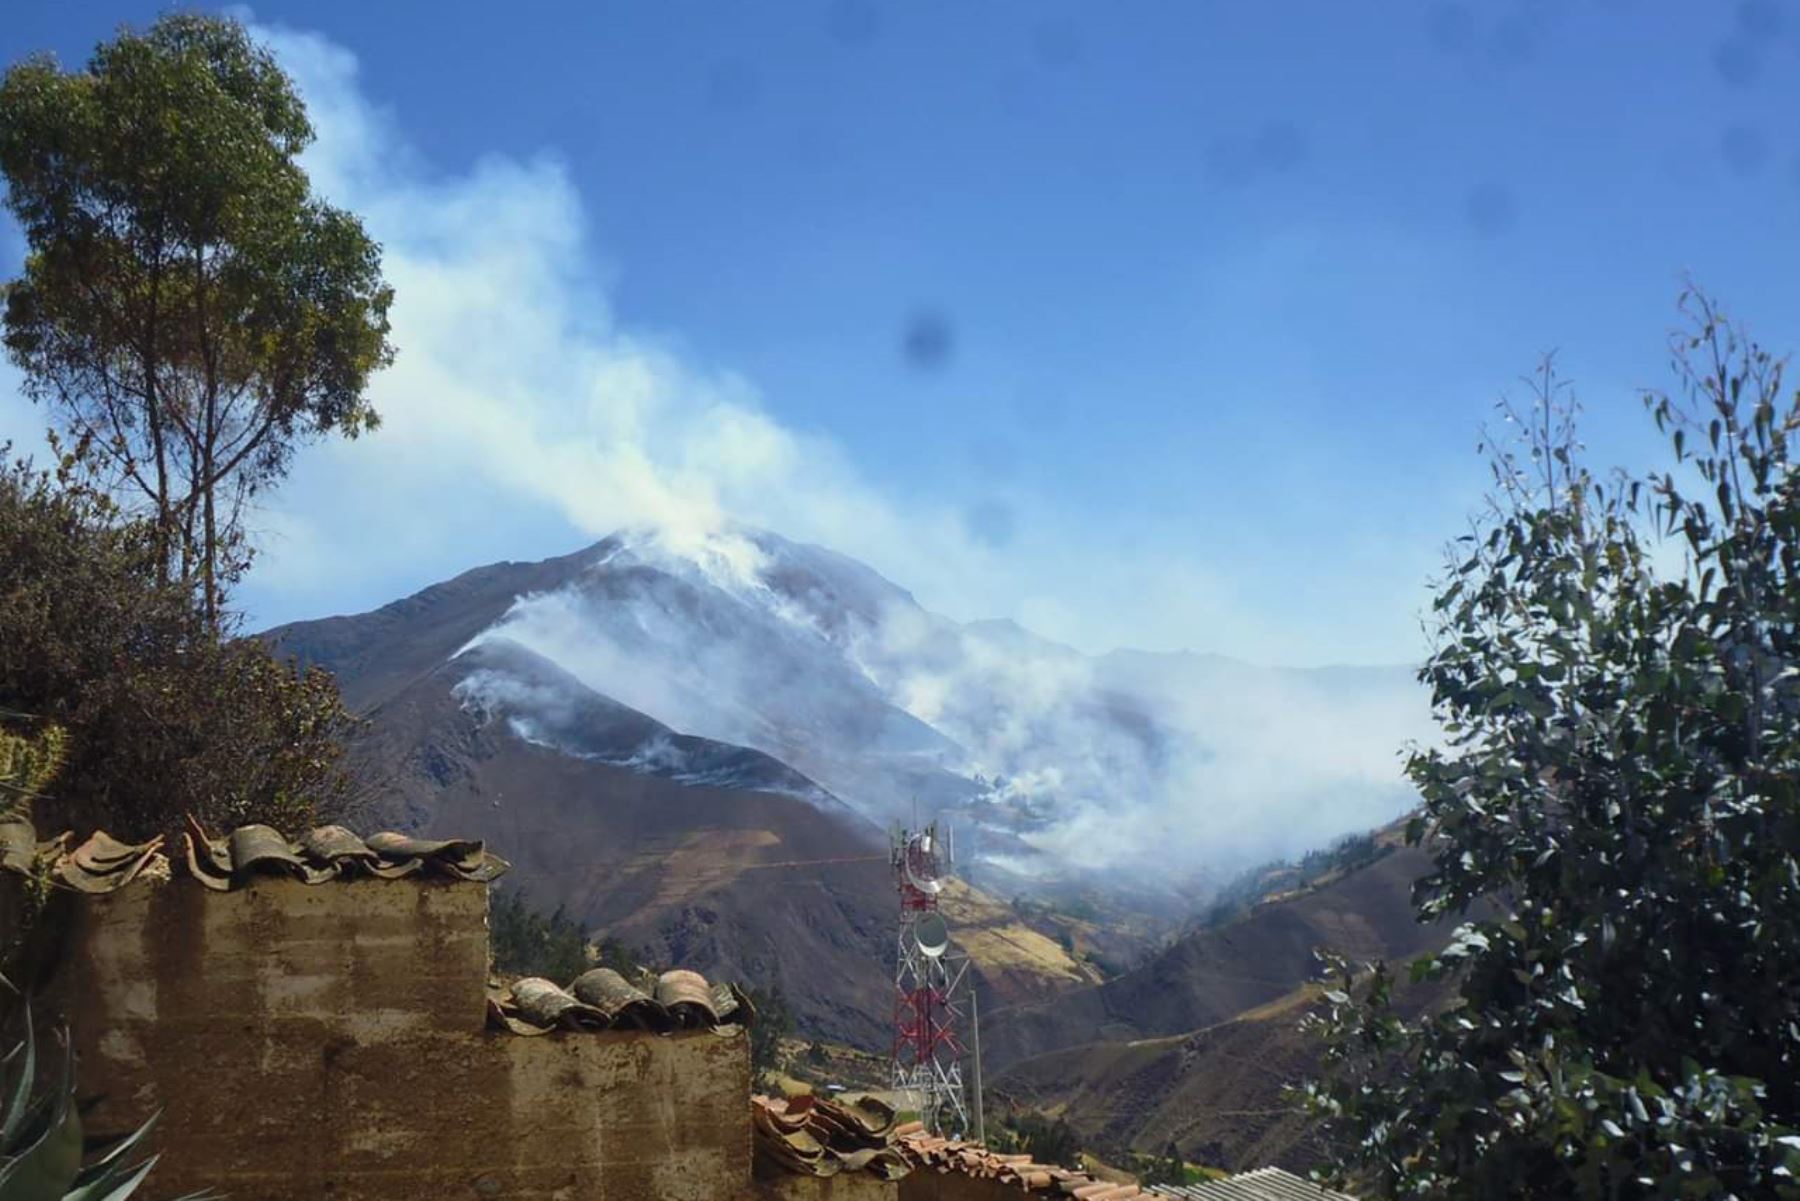 Incendio forestal se desató en el caserío de Llactun, en la provincia de Aija, reportó el Centro de Operaciones de Emergencia Regional de Áncash.